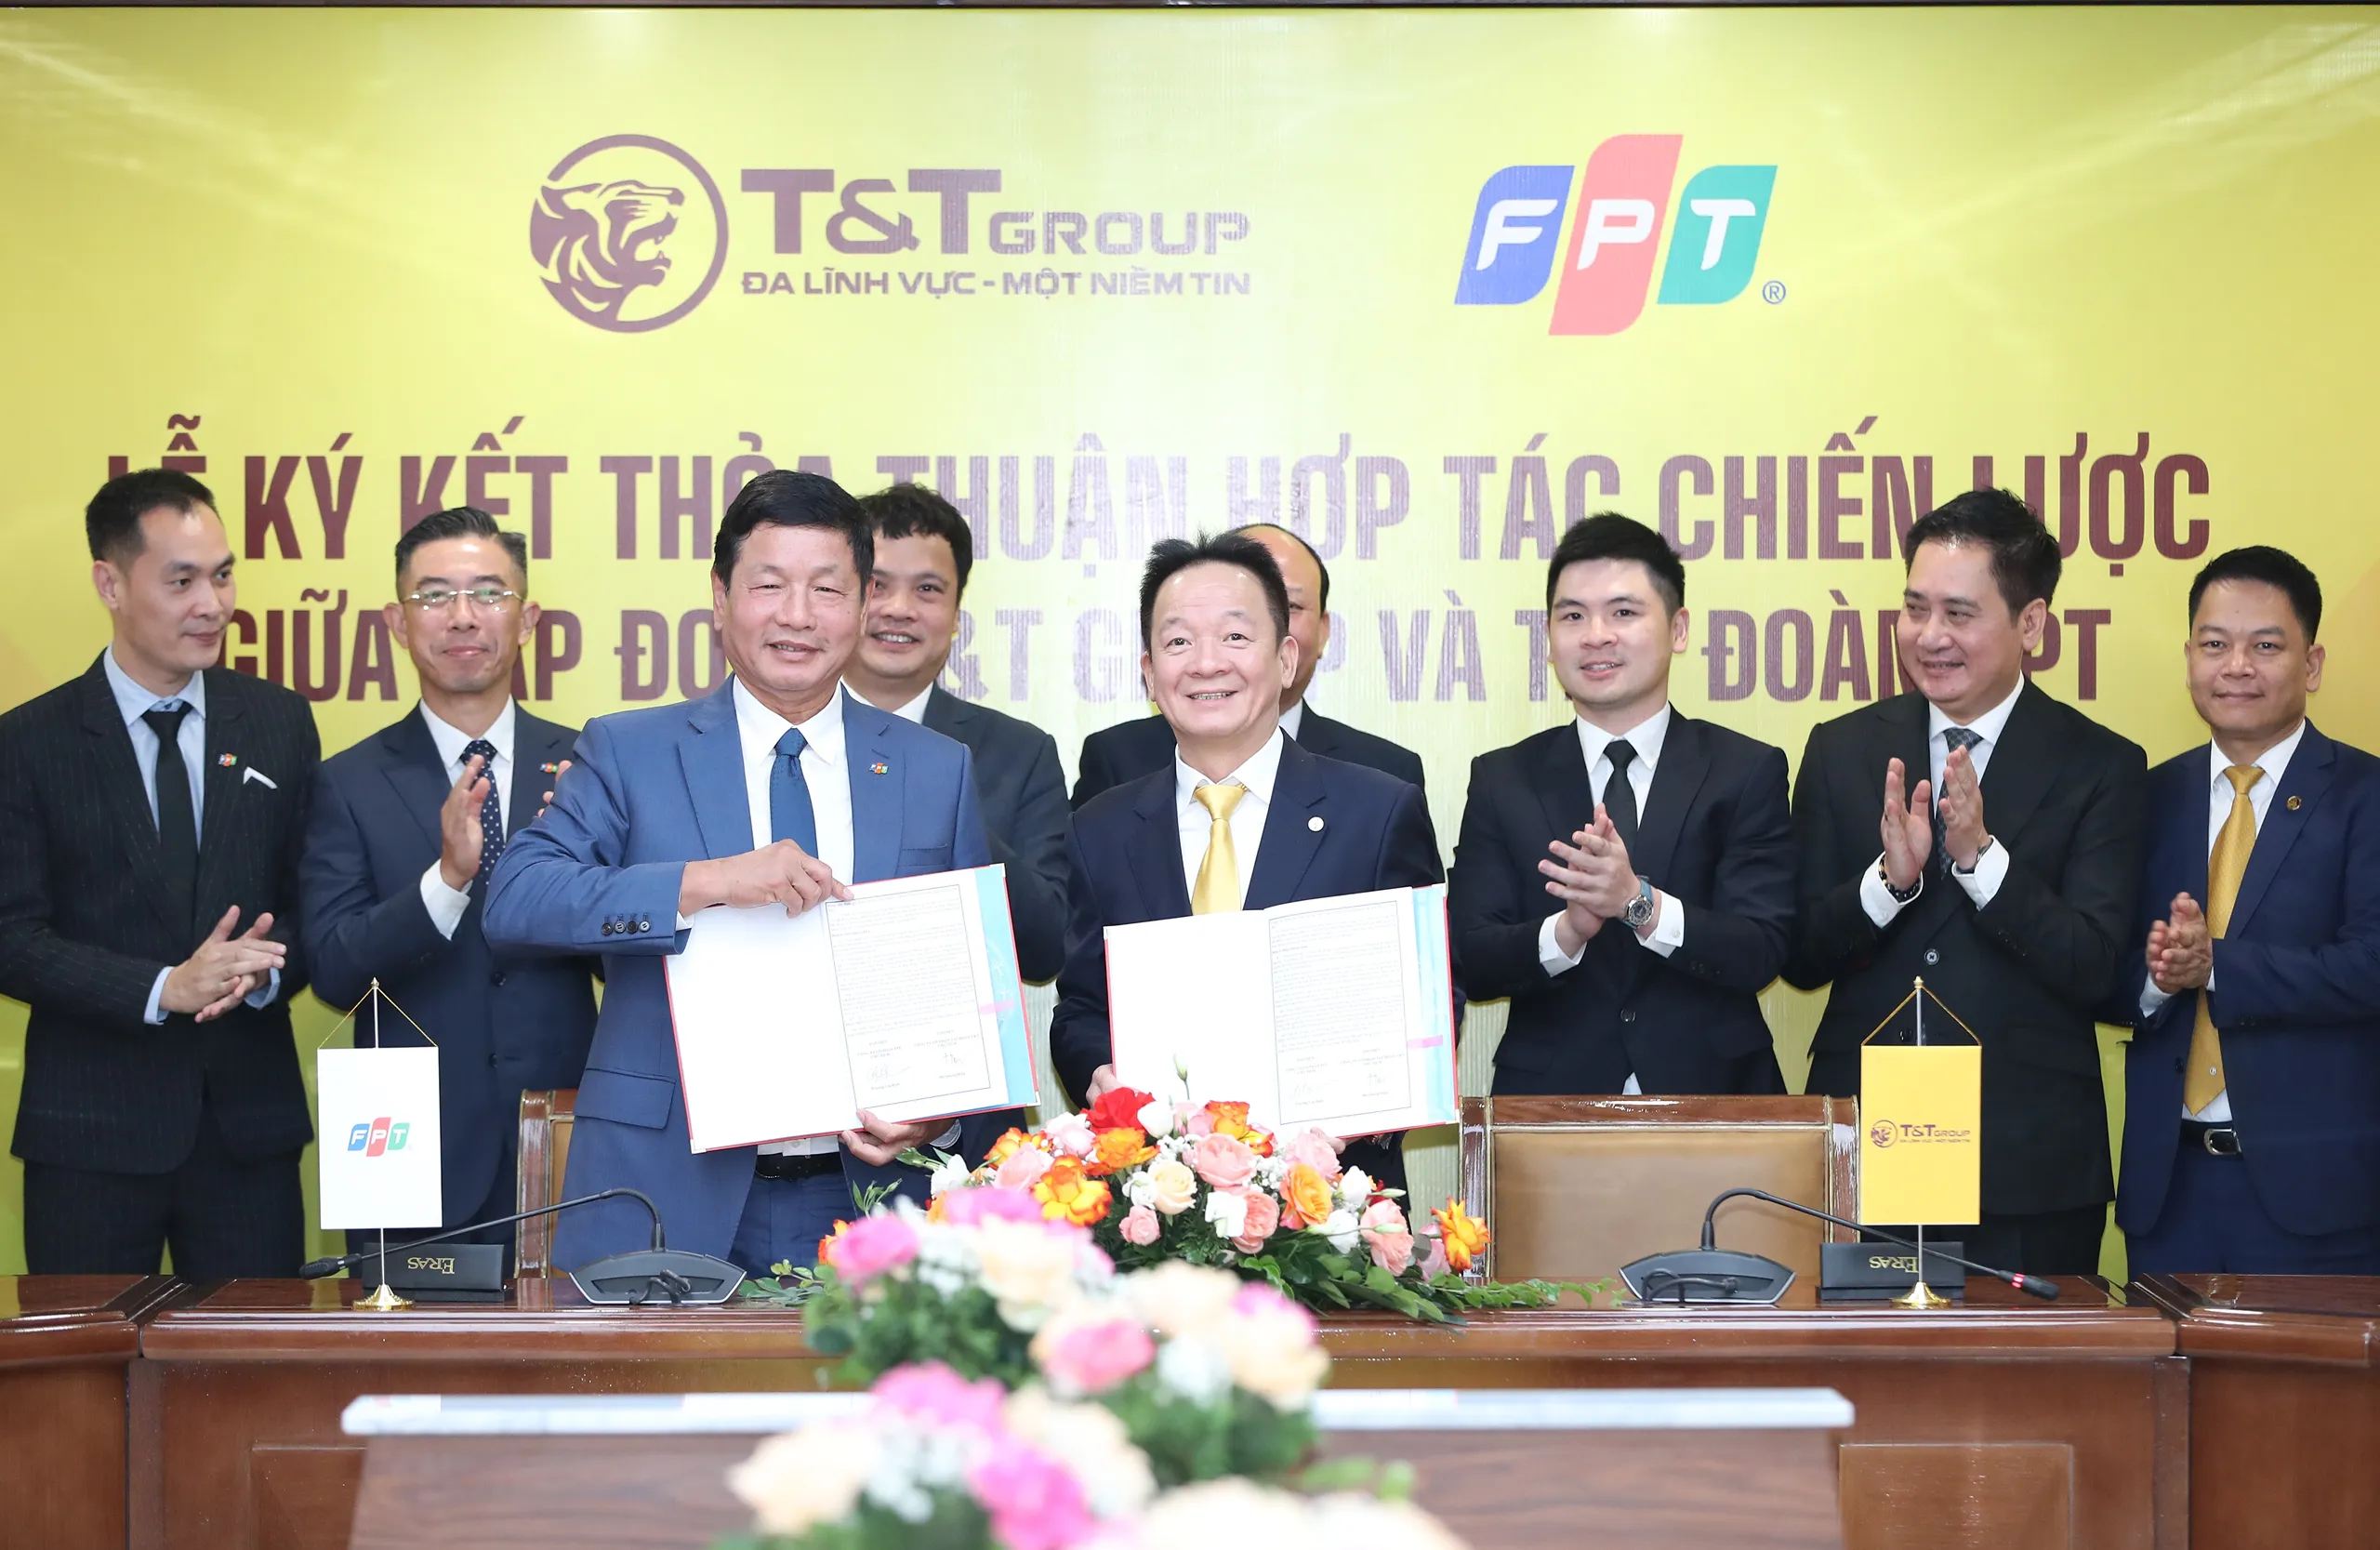 Tập đoàn T&T Group hợp tác chiến lược với Tập đoàn FPT trong lĩnh vực giáo dục, chuyển đổi số, công nghệ thông tin và đô thị thông minh